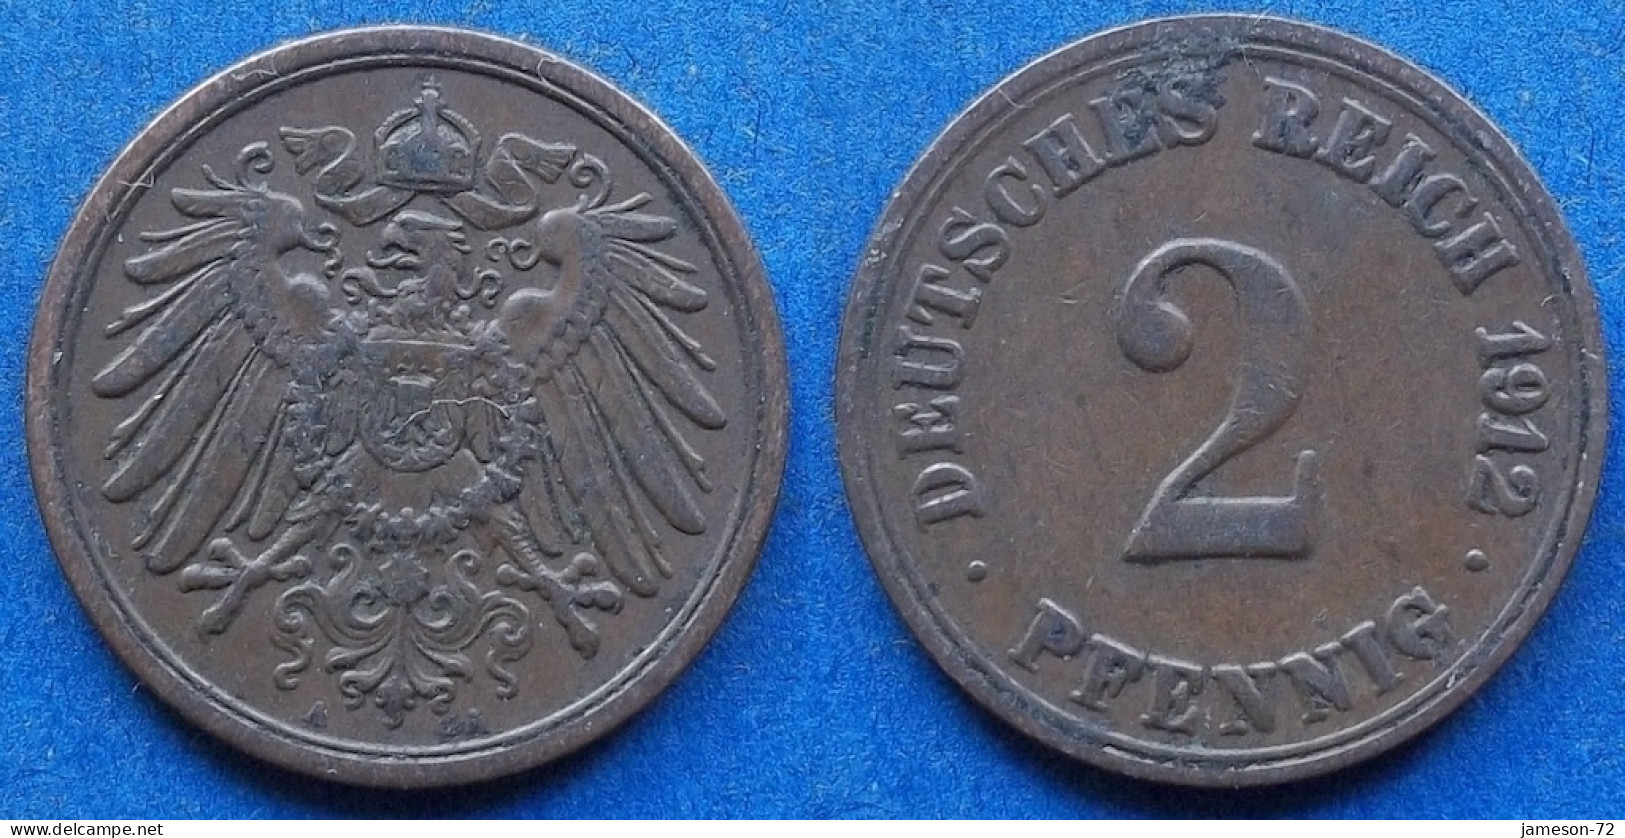 GERMANY - 2 Pfennig 1912 A KM# 16 Empire (1871-1918) - Edelweiss Coins - 2 Pfennig